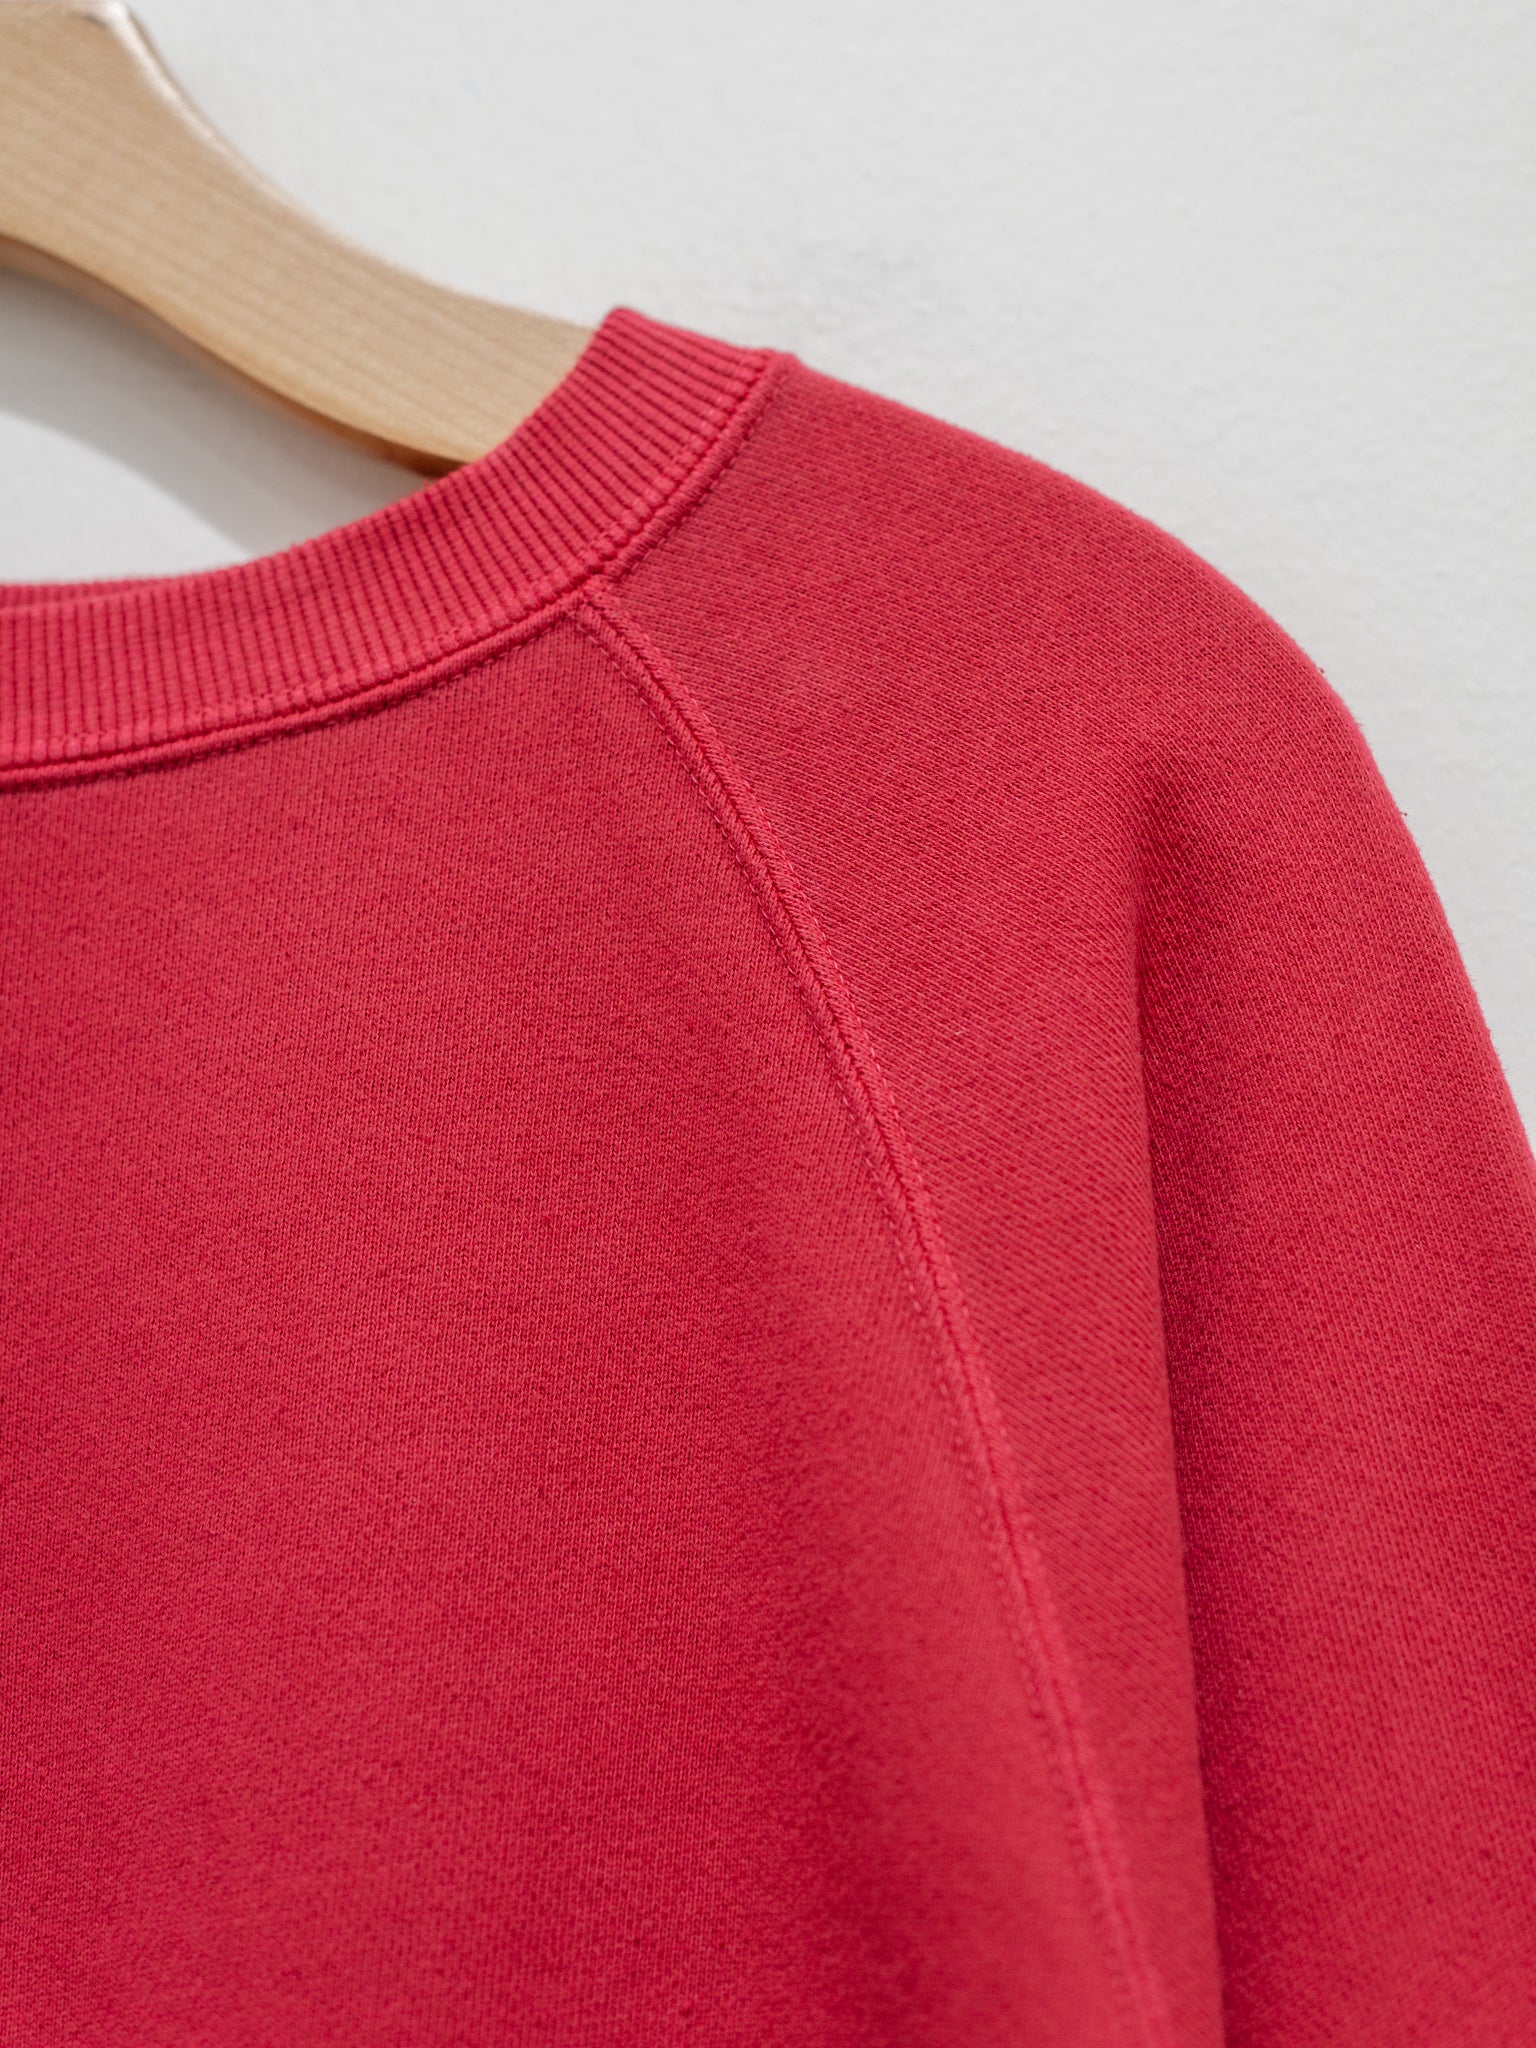 Namu Shop - ICHI Sweatshirt - Red